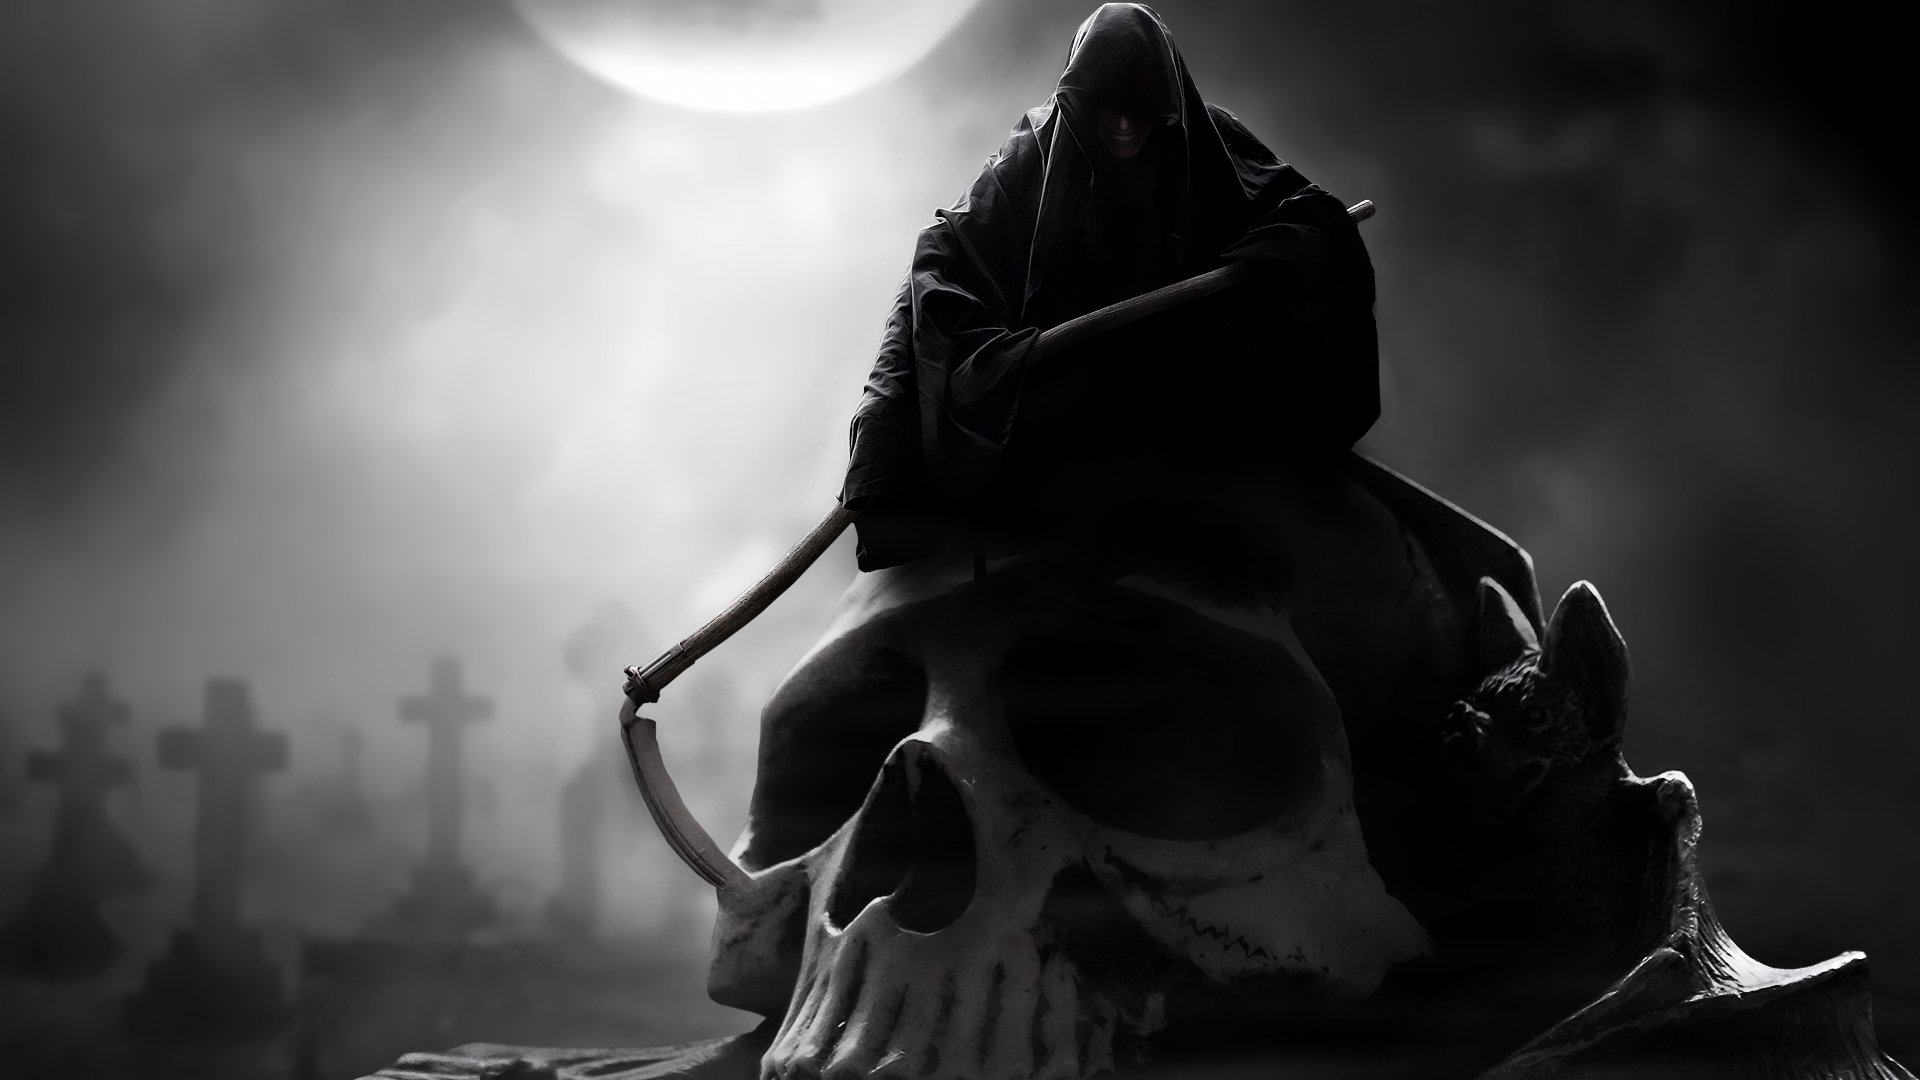 Free download wallpaper Grim Reaper, Dark on your PC desktop